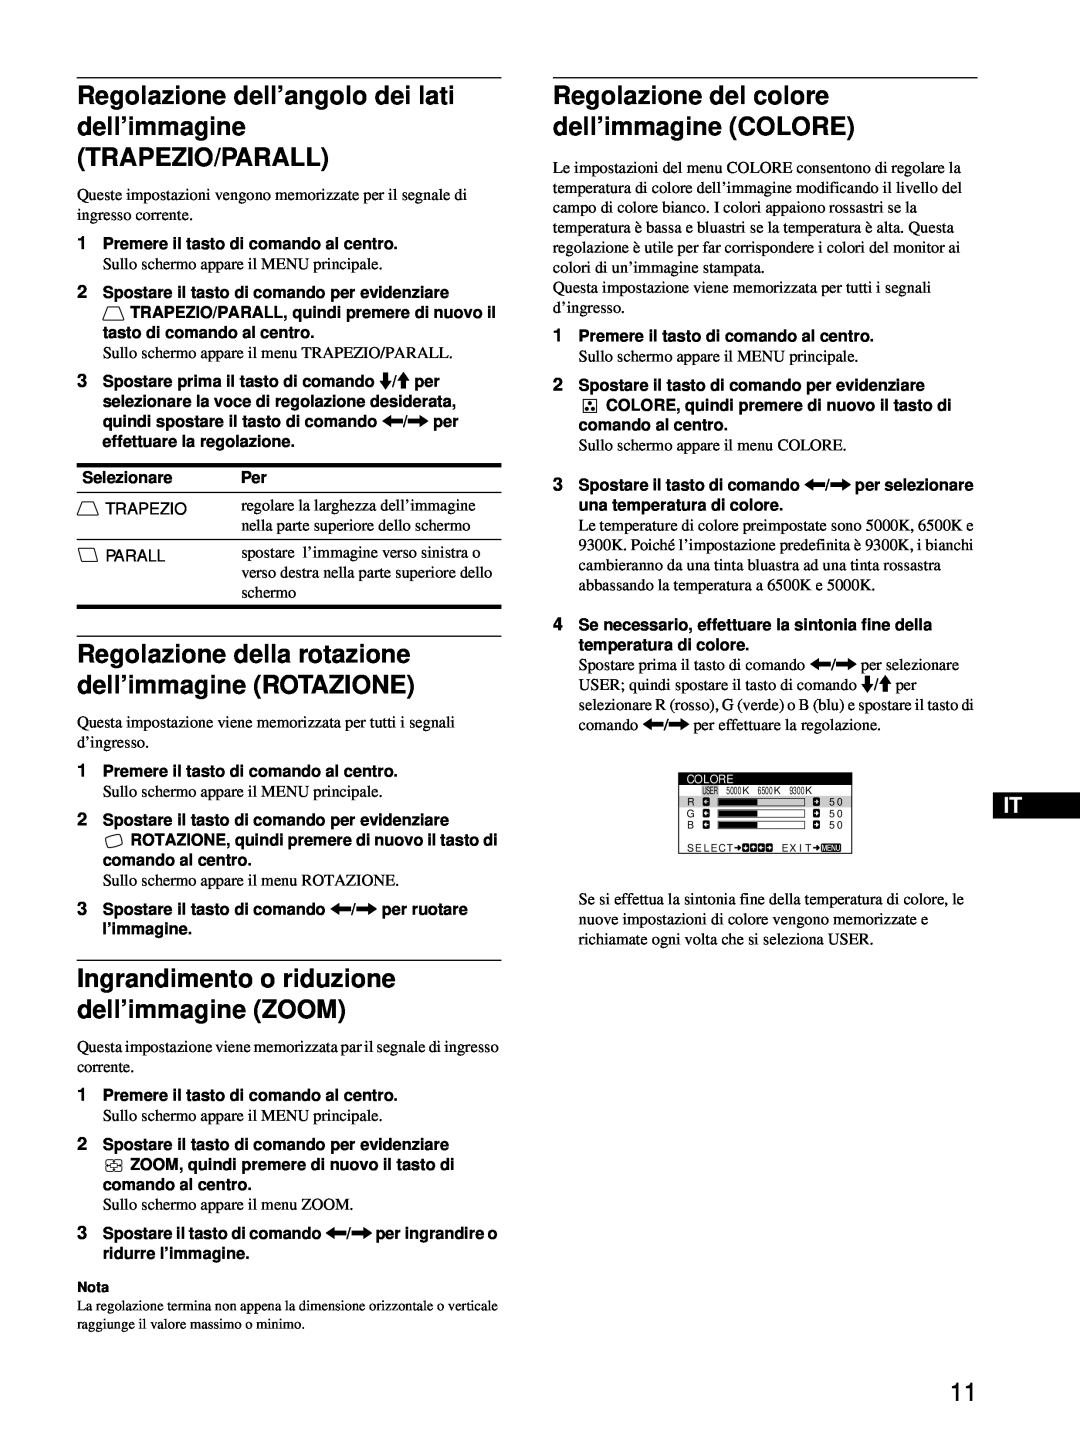 Sony HMD-A220 Regolazione dell’angolo dei lati dell’immagine TRAPEZIO/PARALL, Regolazione del colore dell’immagine COLORE 